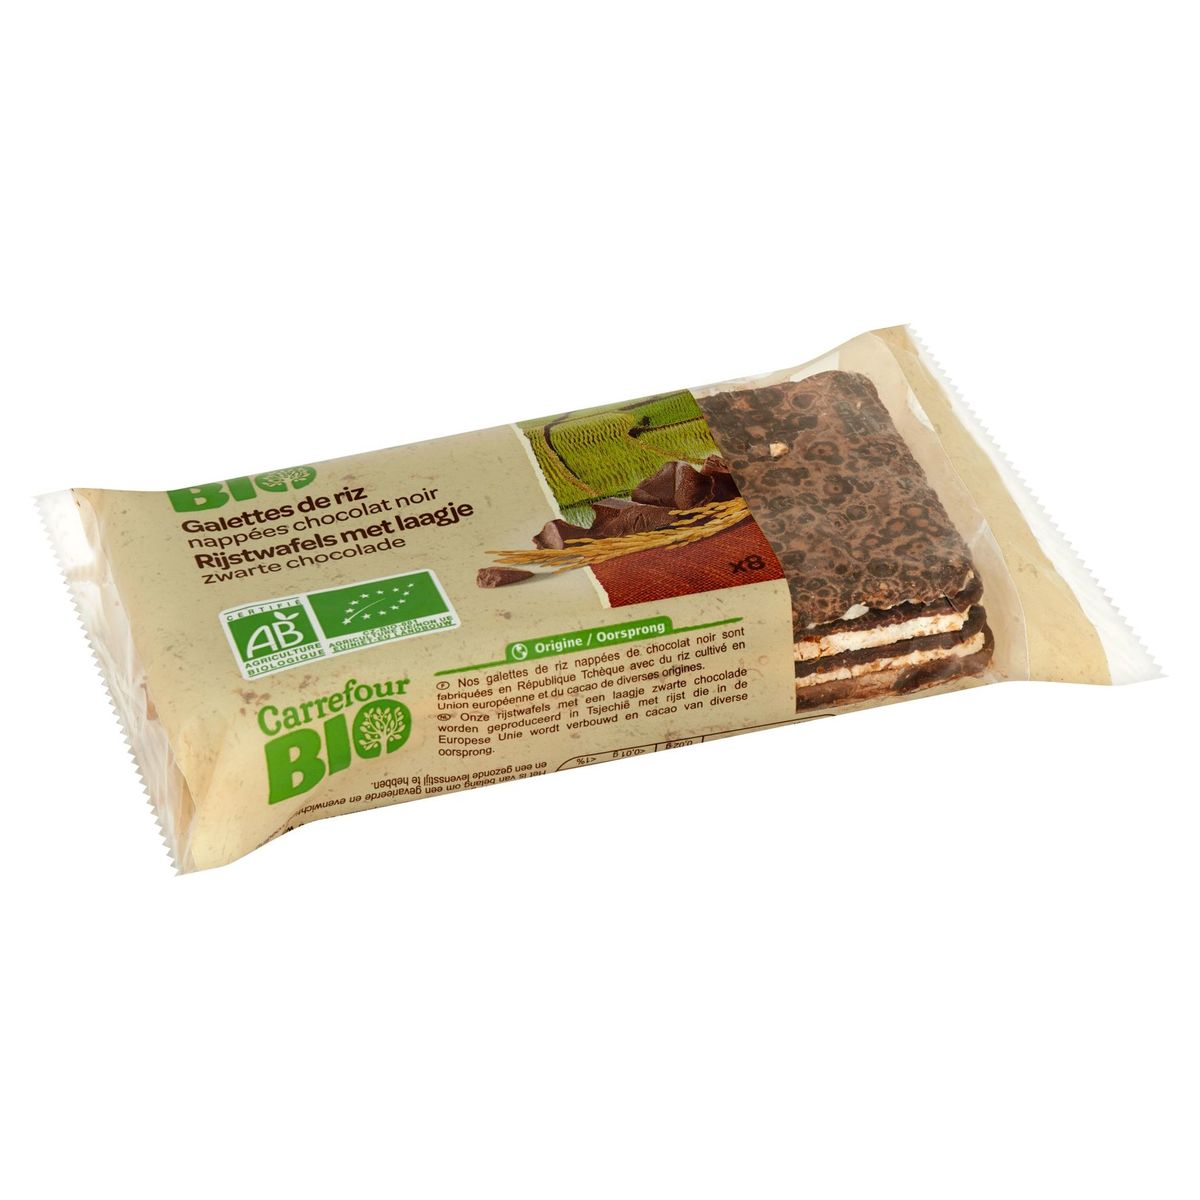 Carrefour Bio Rijstwafels met Laagje Zwarte Chocolade 8 Stuks 100 g